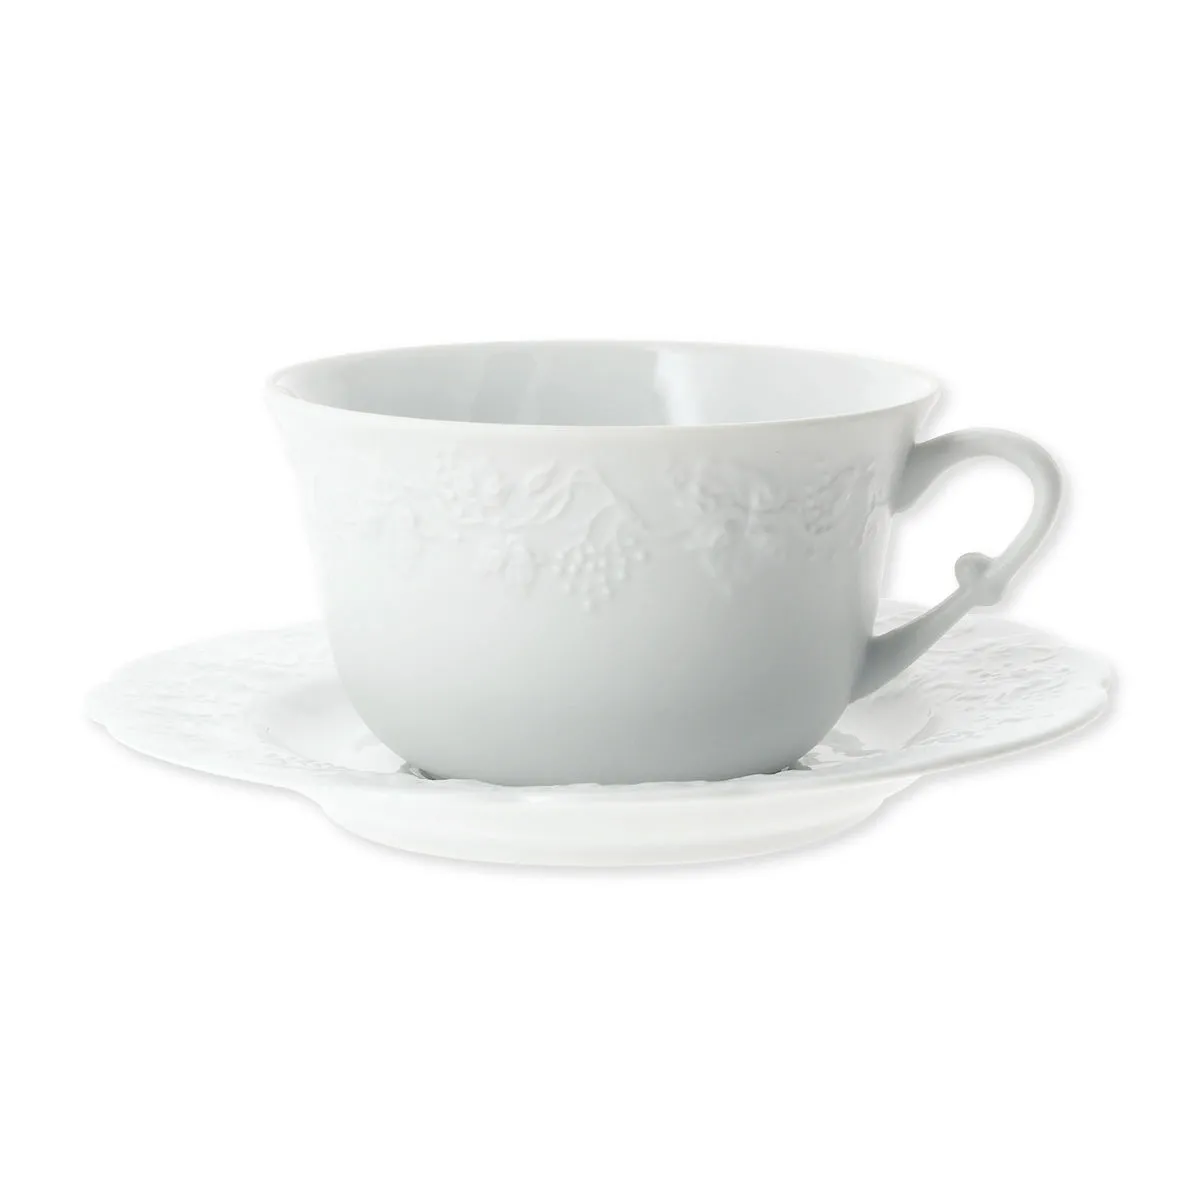 Tasse café en porcelaine blanche filet or 12cl - RITZO - Bruno Evrard